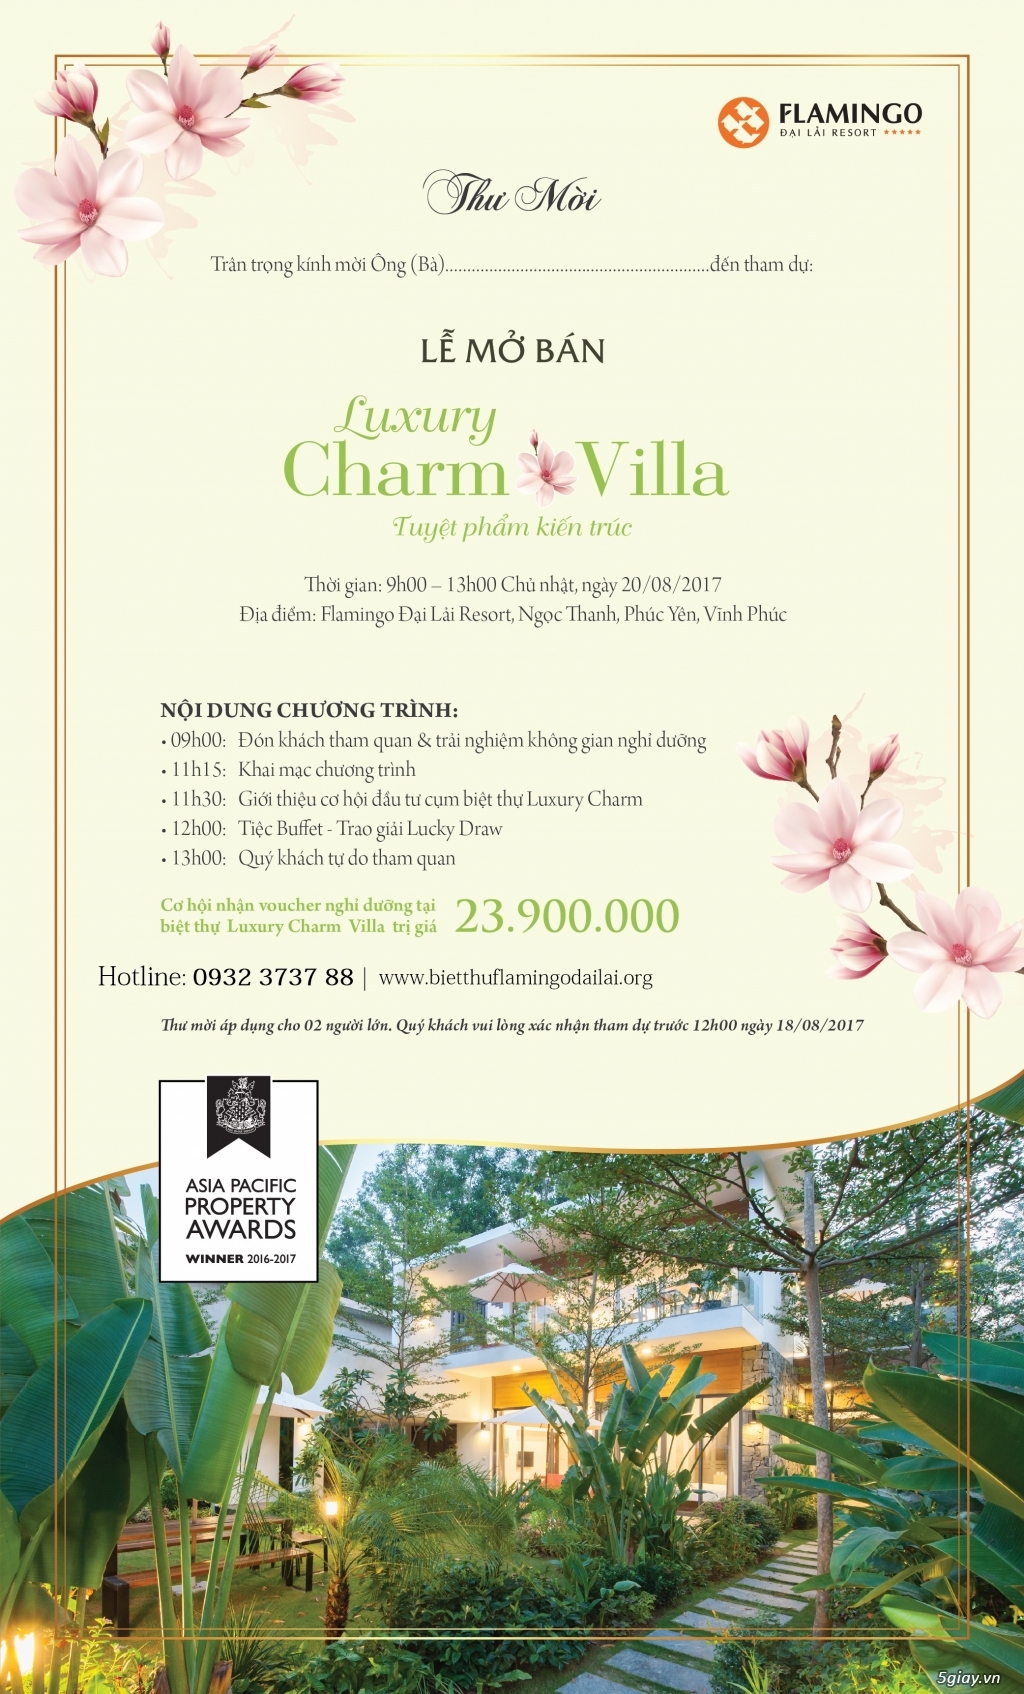 Tưng bừng sự kiện 20/8 mở bán cụm biệt thự luxury charm villa flamingo